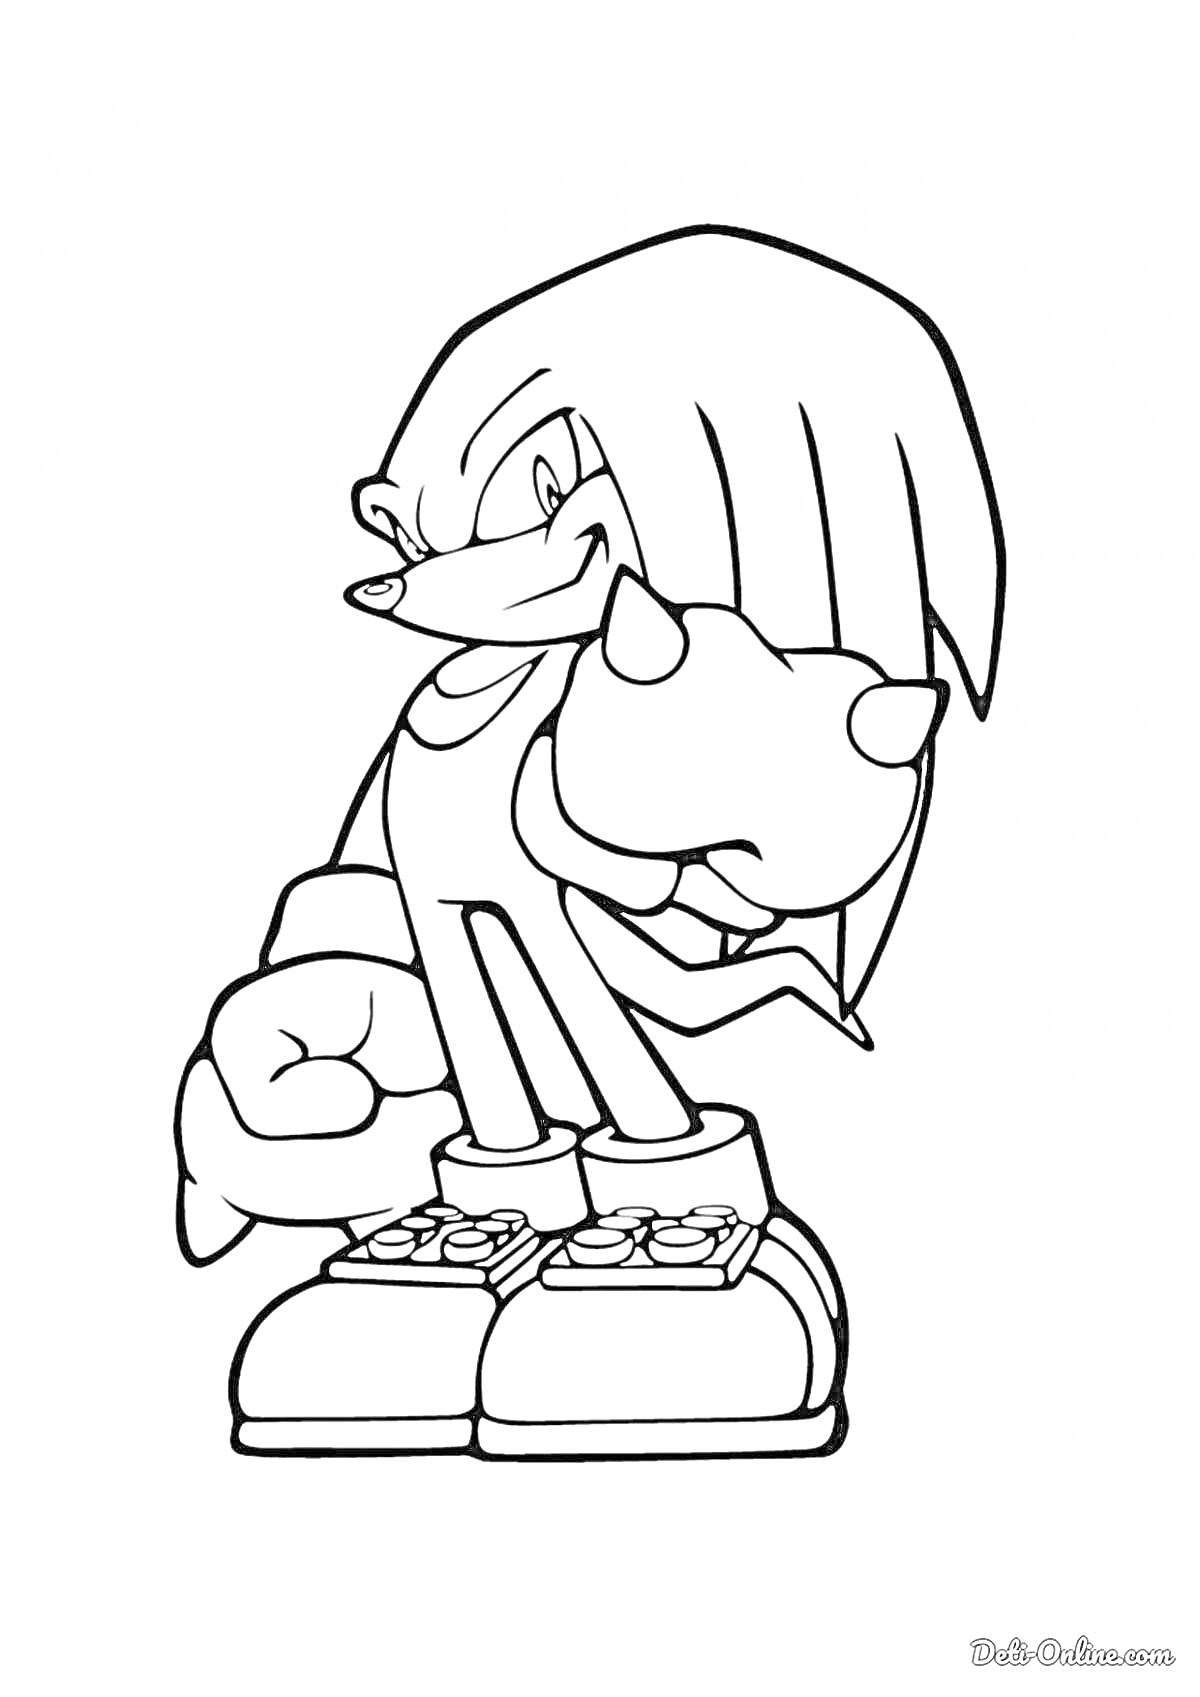 Раскраска Наклз из серии Sonic the Hedgehog целиком с кулаками, стоящий в боевой стойке